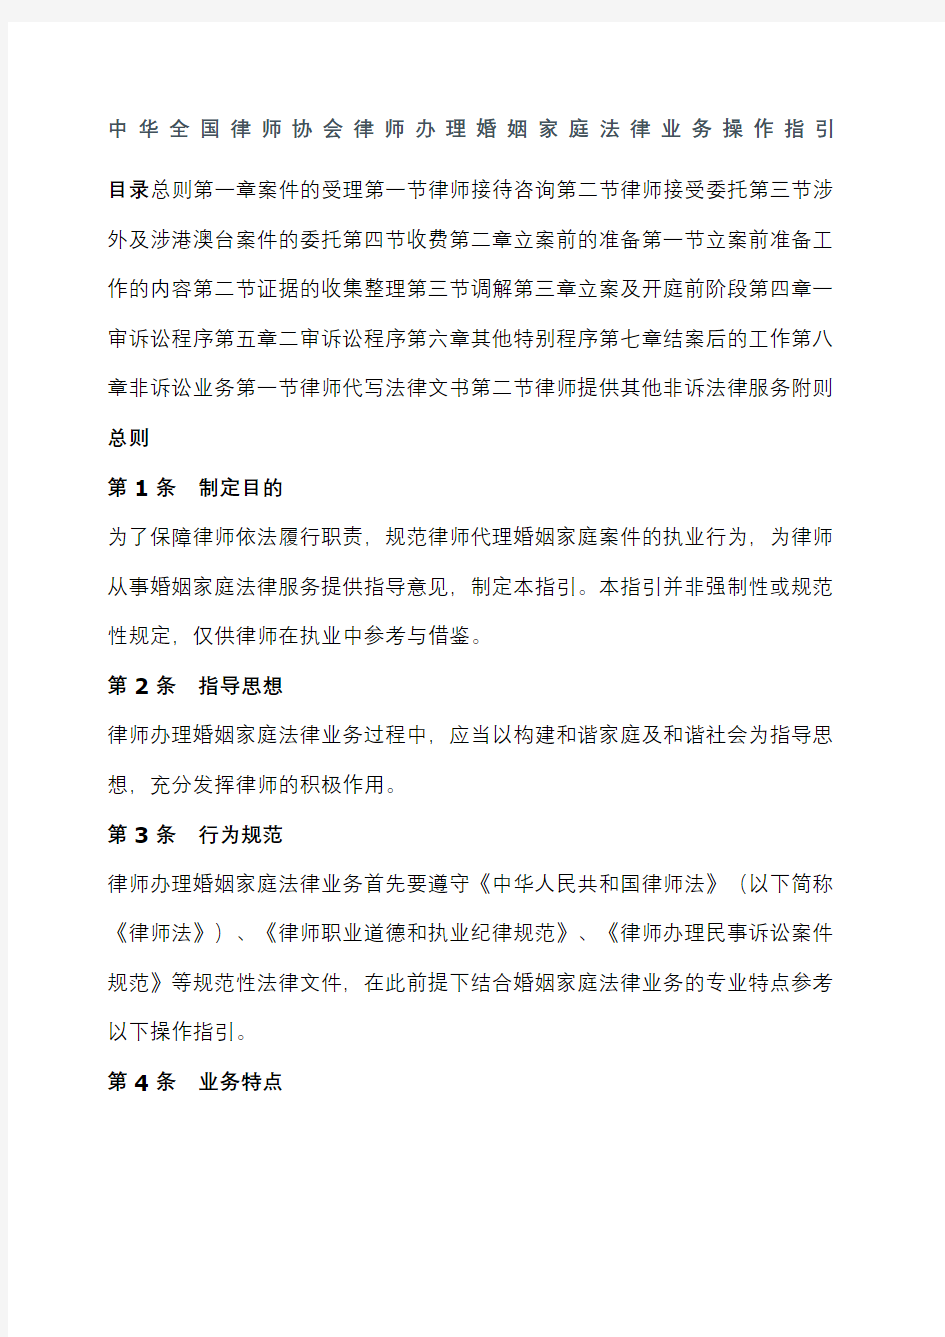 中华全国律师协会律师办理婚姻家庭法律业务操作指引